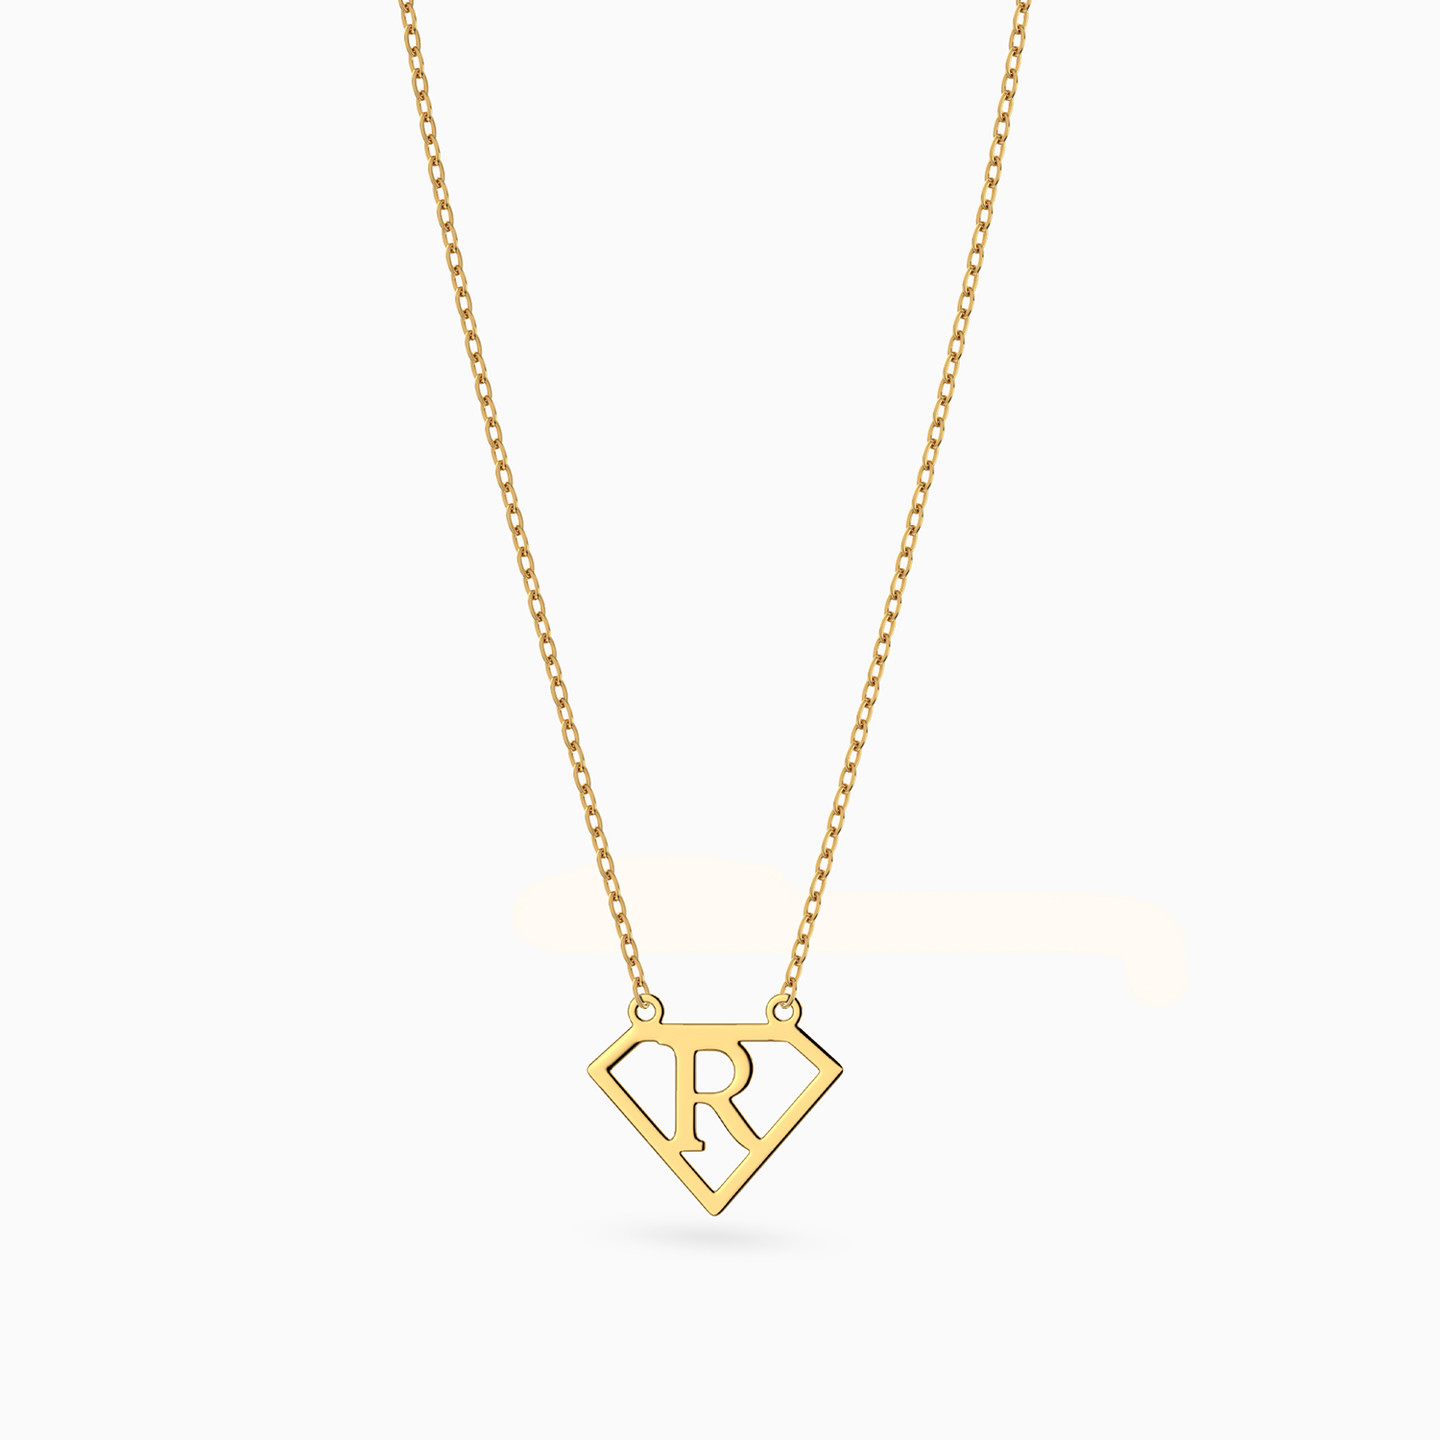 14K Gold R Pendant Necklace - 3